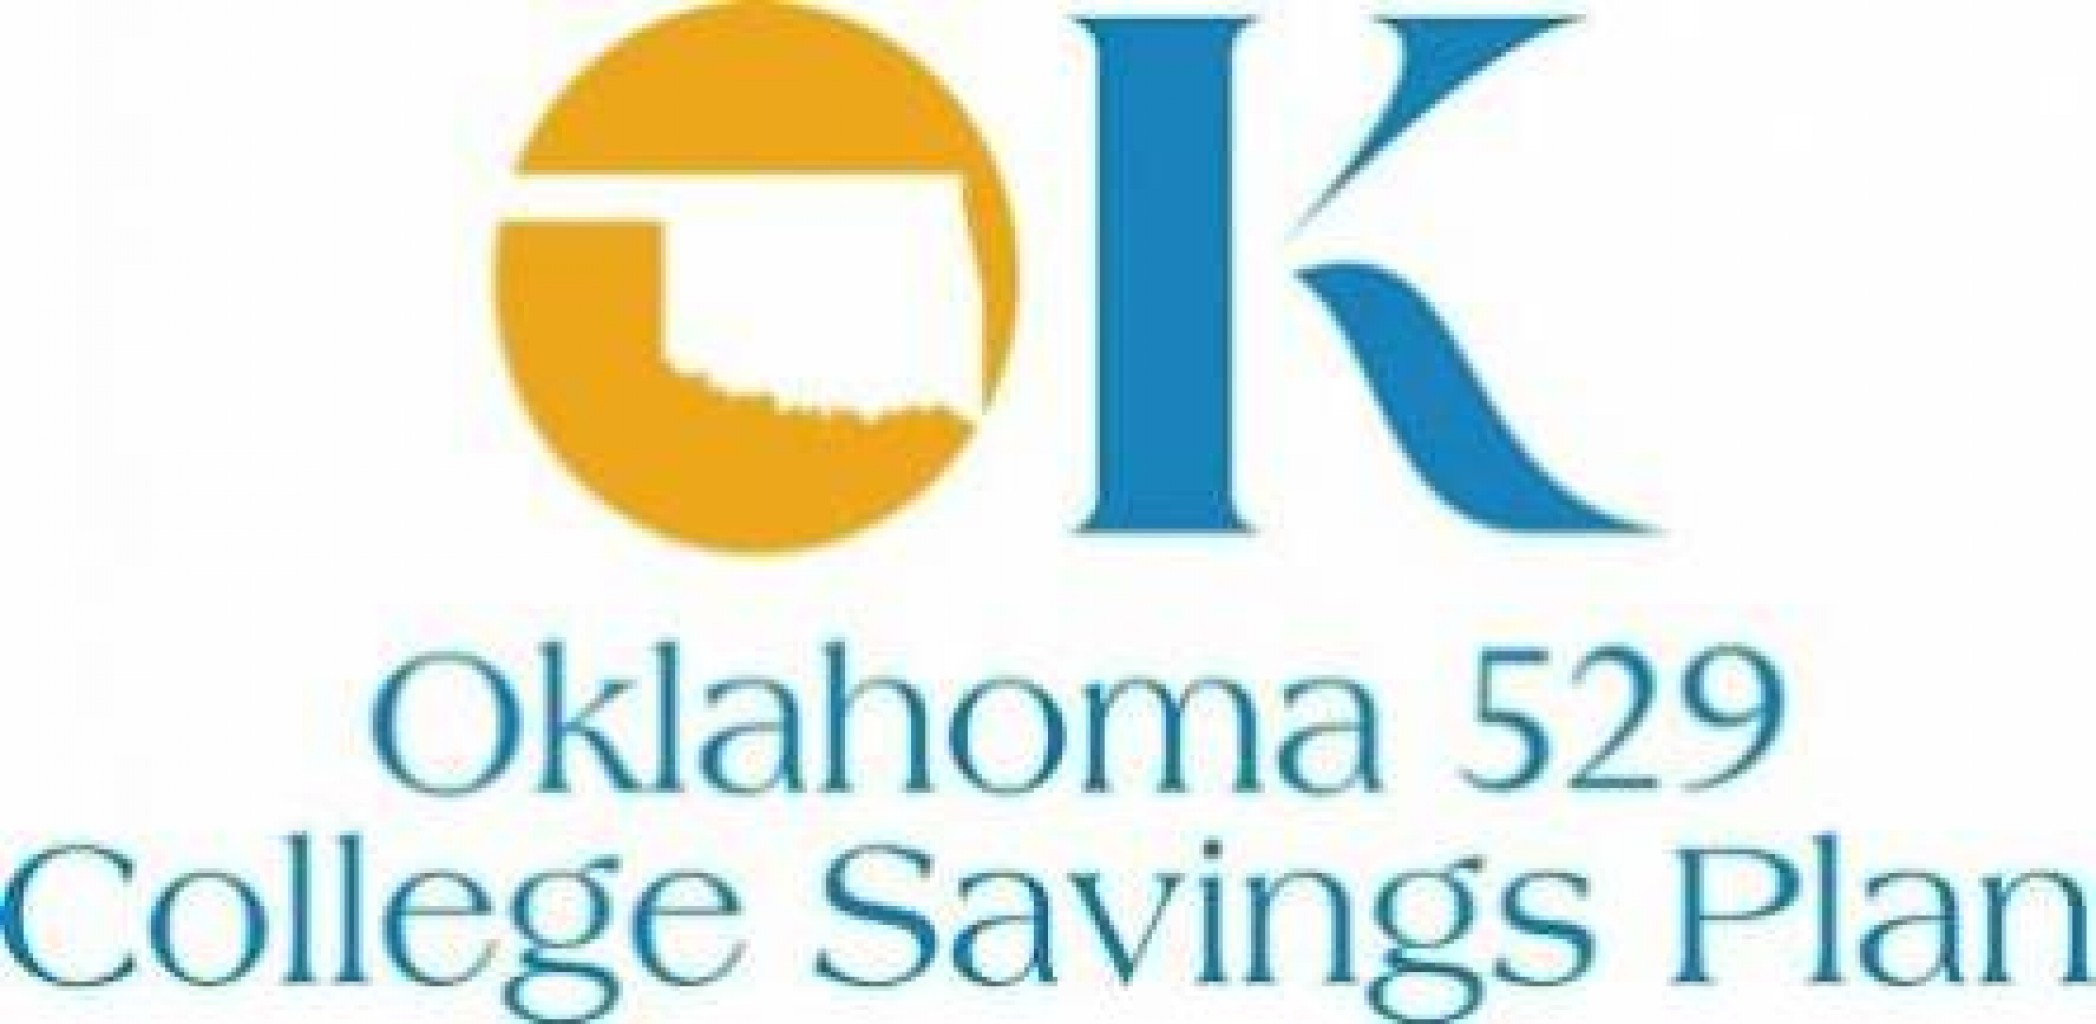 El plan de ahorros para la universidad Oklahoma 529 reduce las tarifas